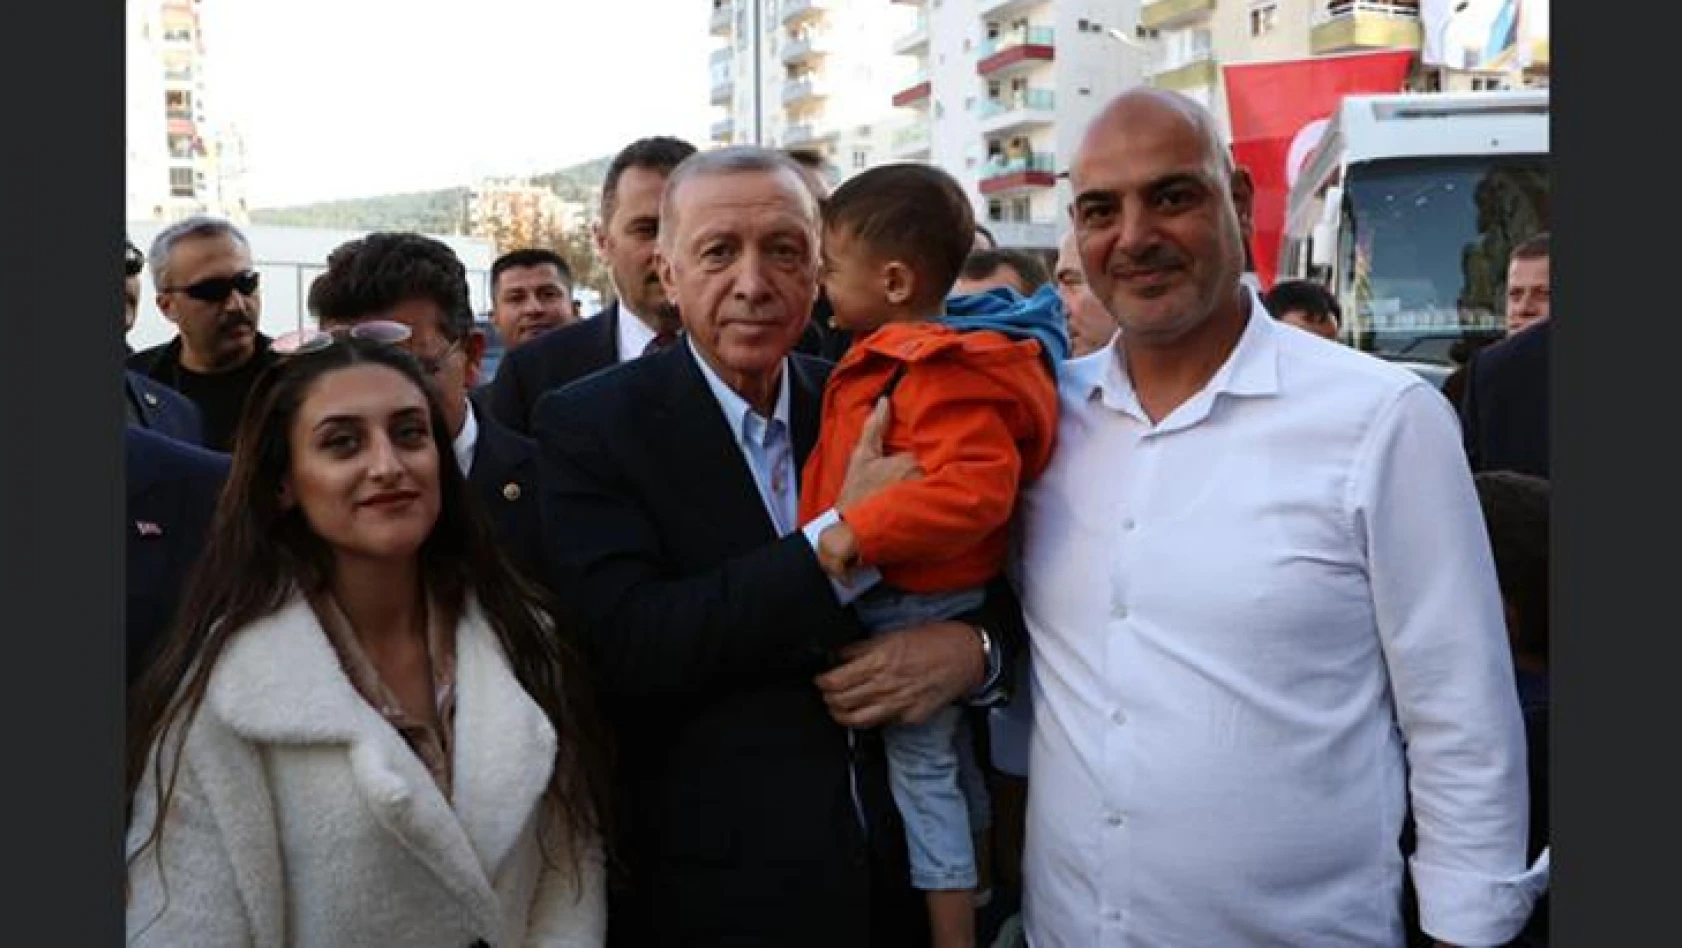 Cumhurbaşkanı Erdoğan'dan iş insanı Adem Yaşar'a 3 çocuk tavsiyesi